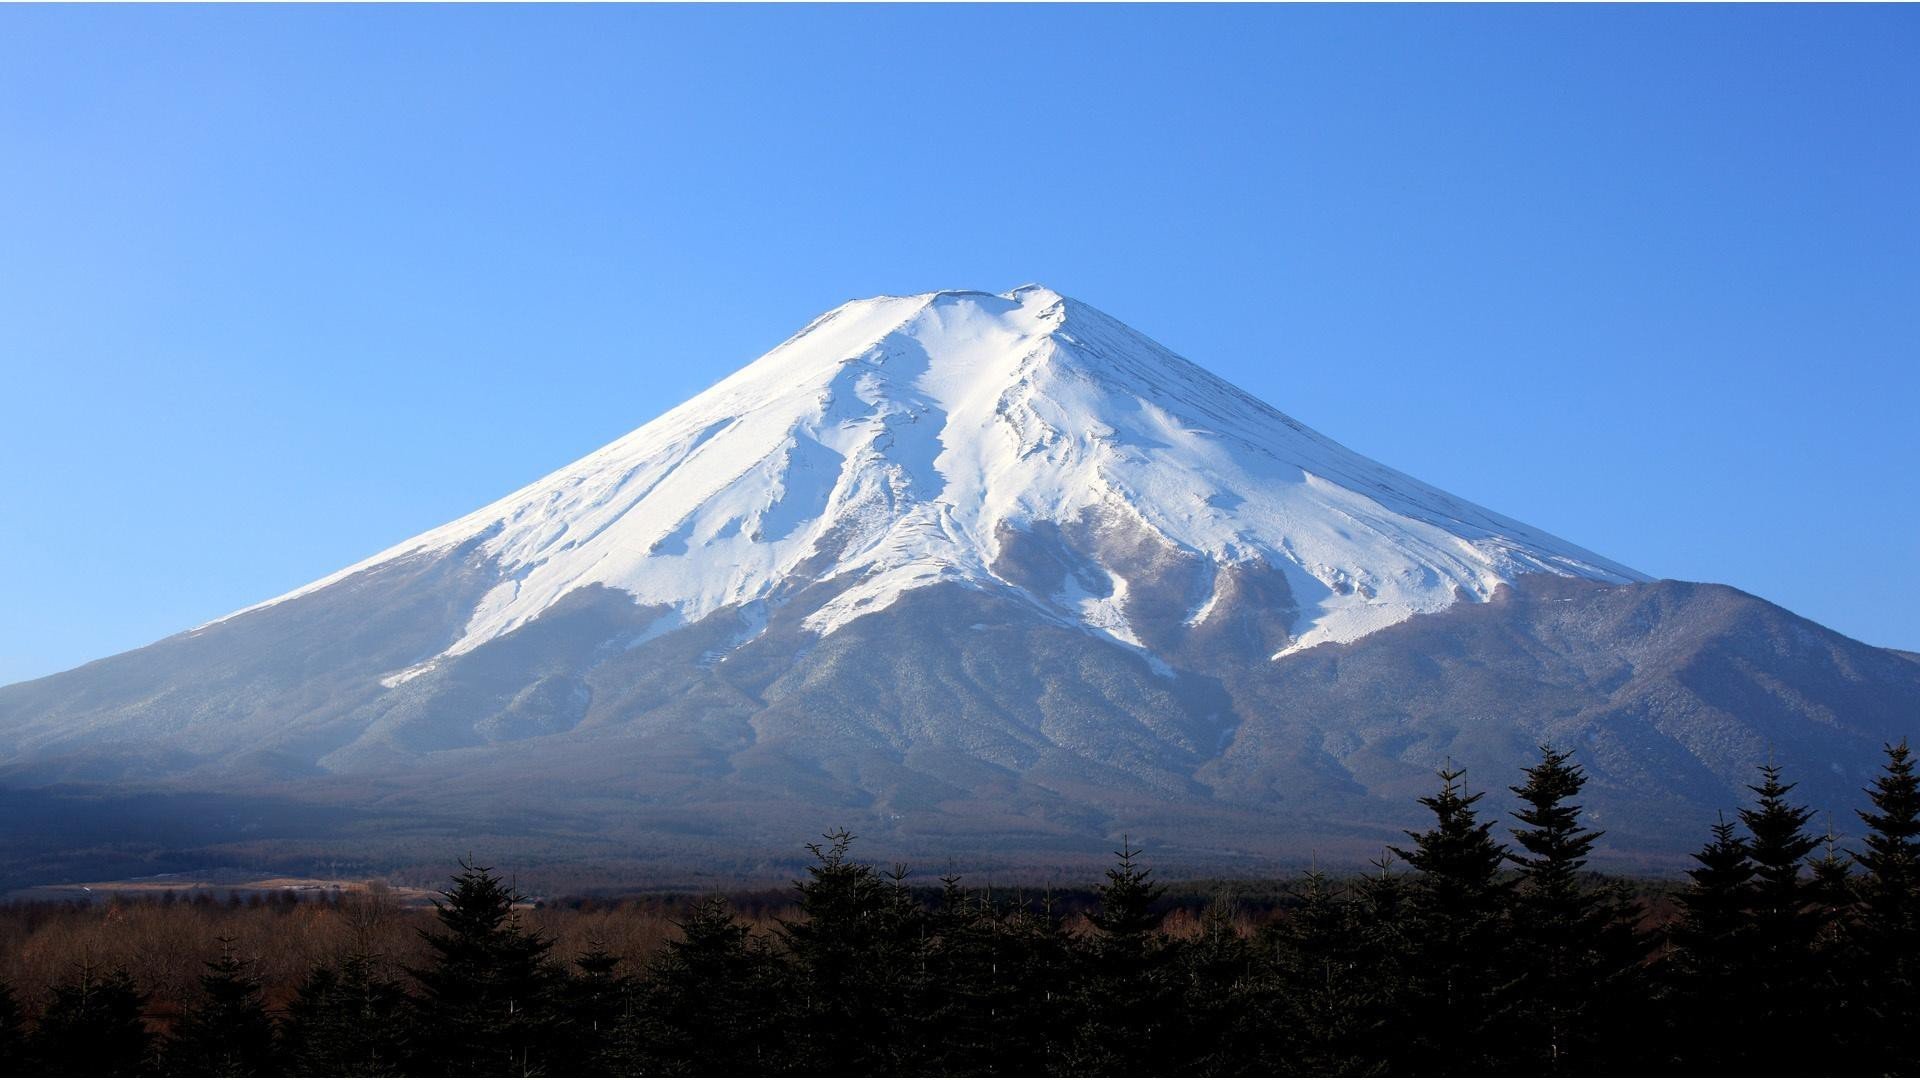  Mount  Fuji  Japan HD Wallpapers Desktop and Mobile 